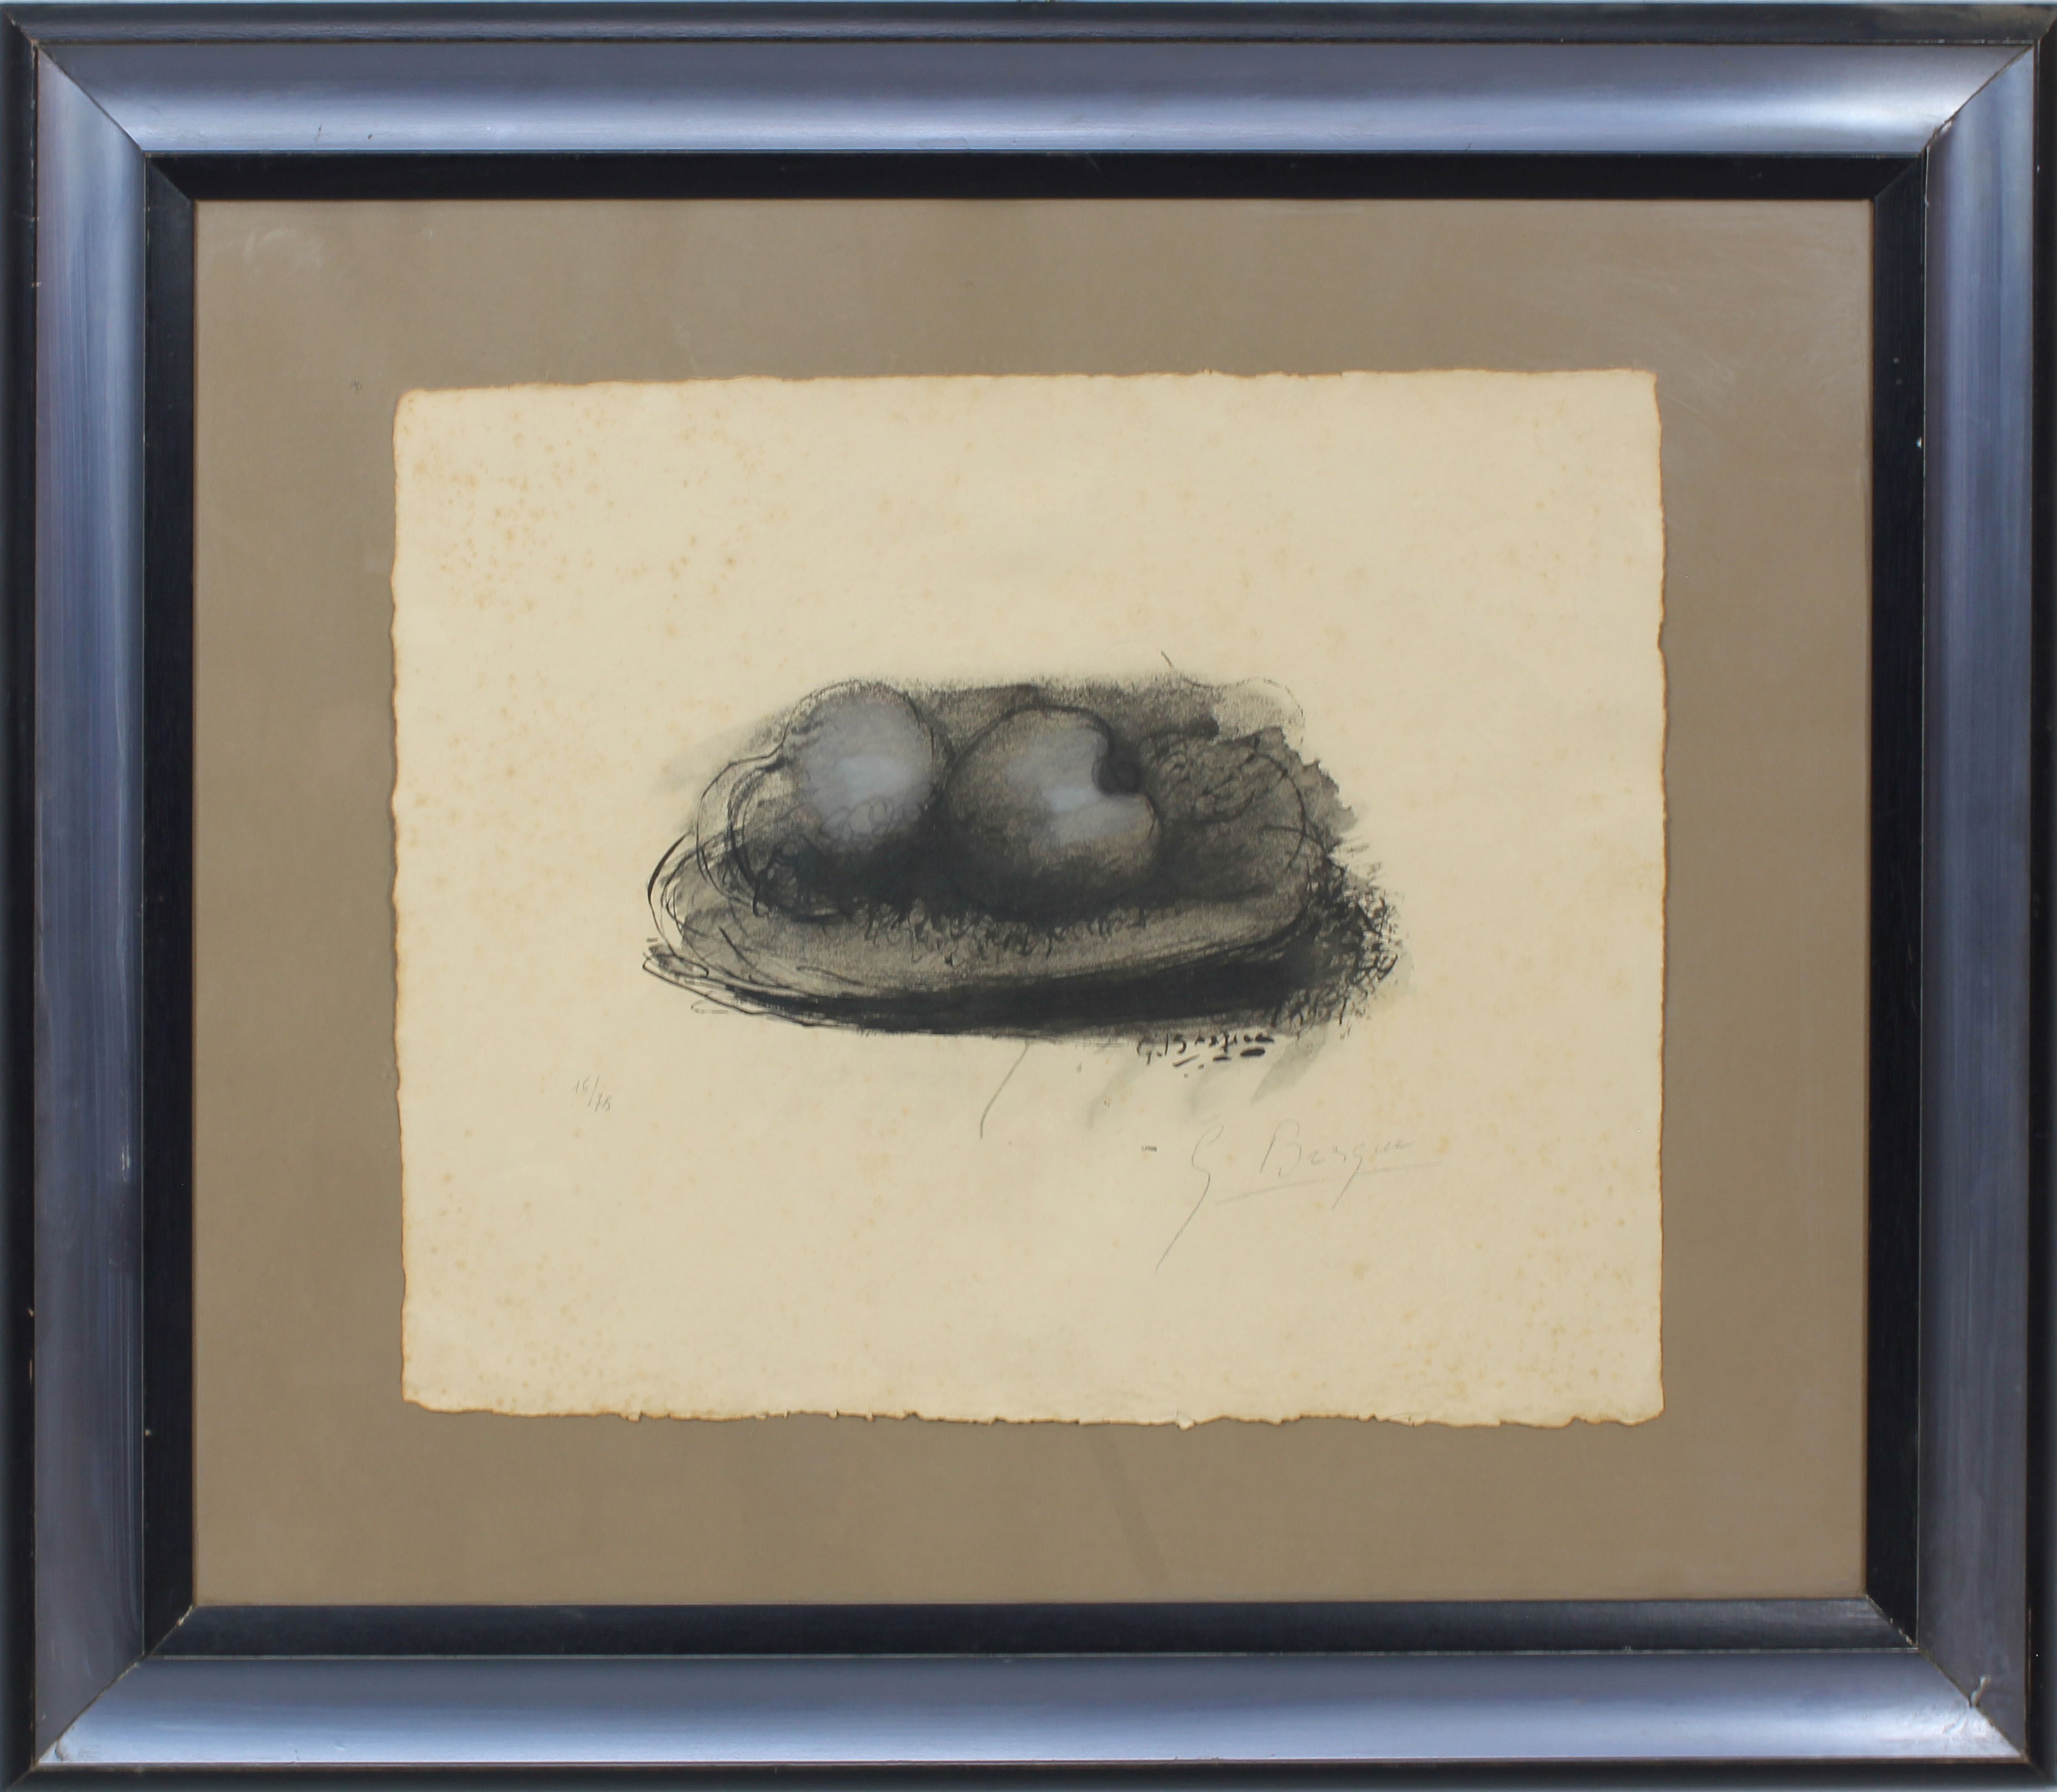 Frutta, grafica 16/75, firmata G. Braque?, cm. 48x40